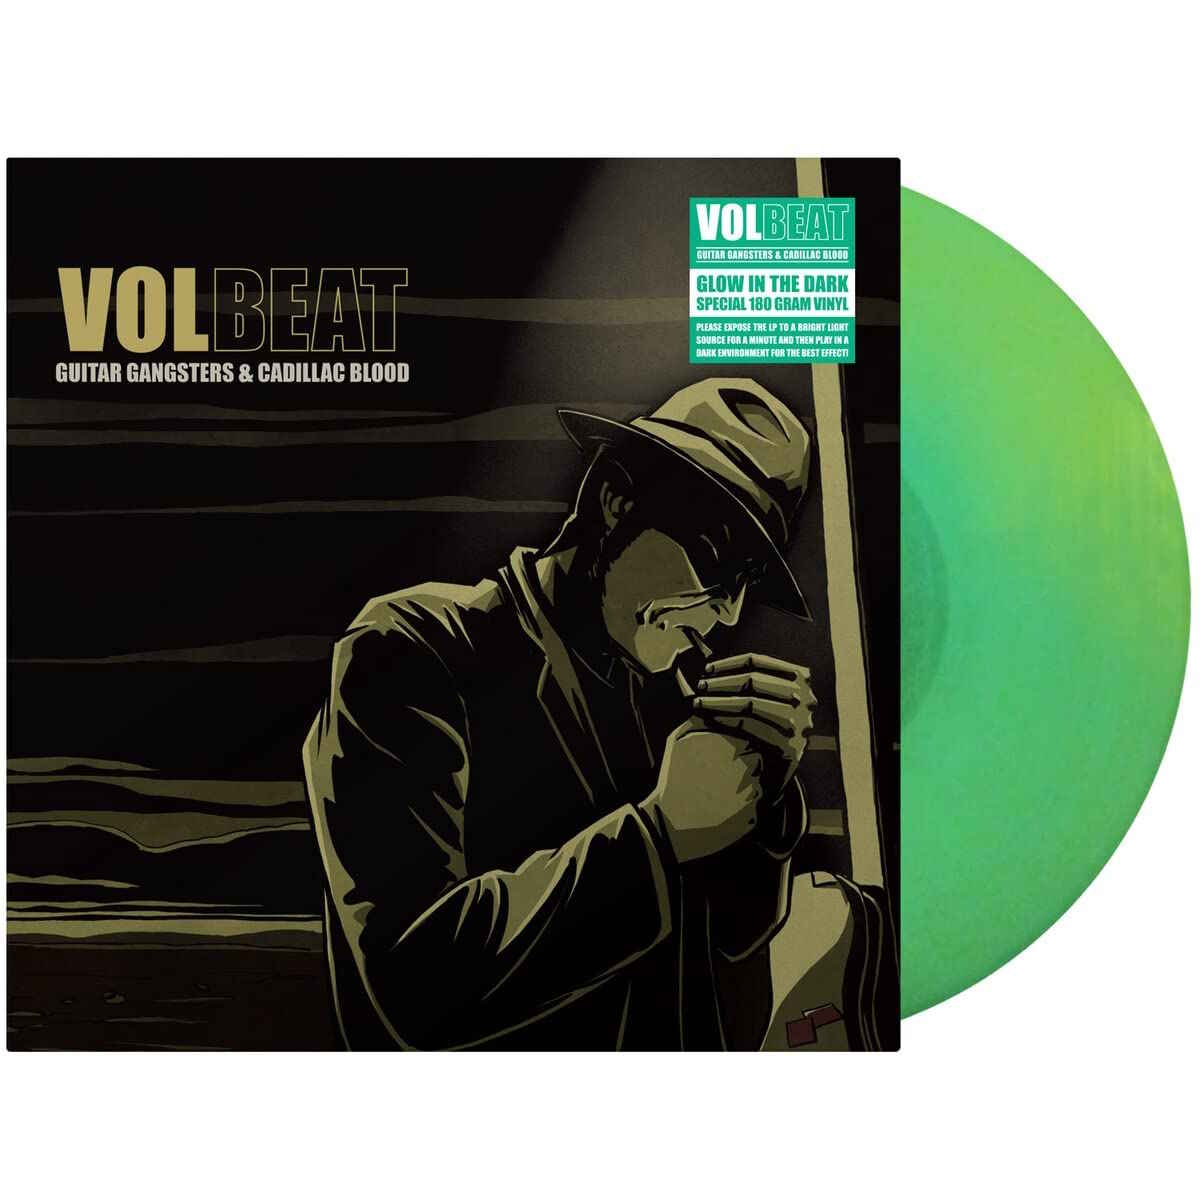 Volbeat - Guitar Gangsters & Cadillac Blood (reedición en vinilo)